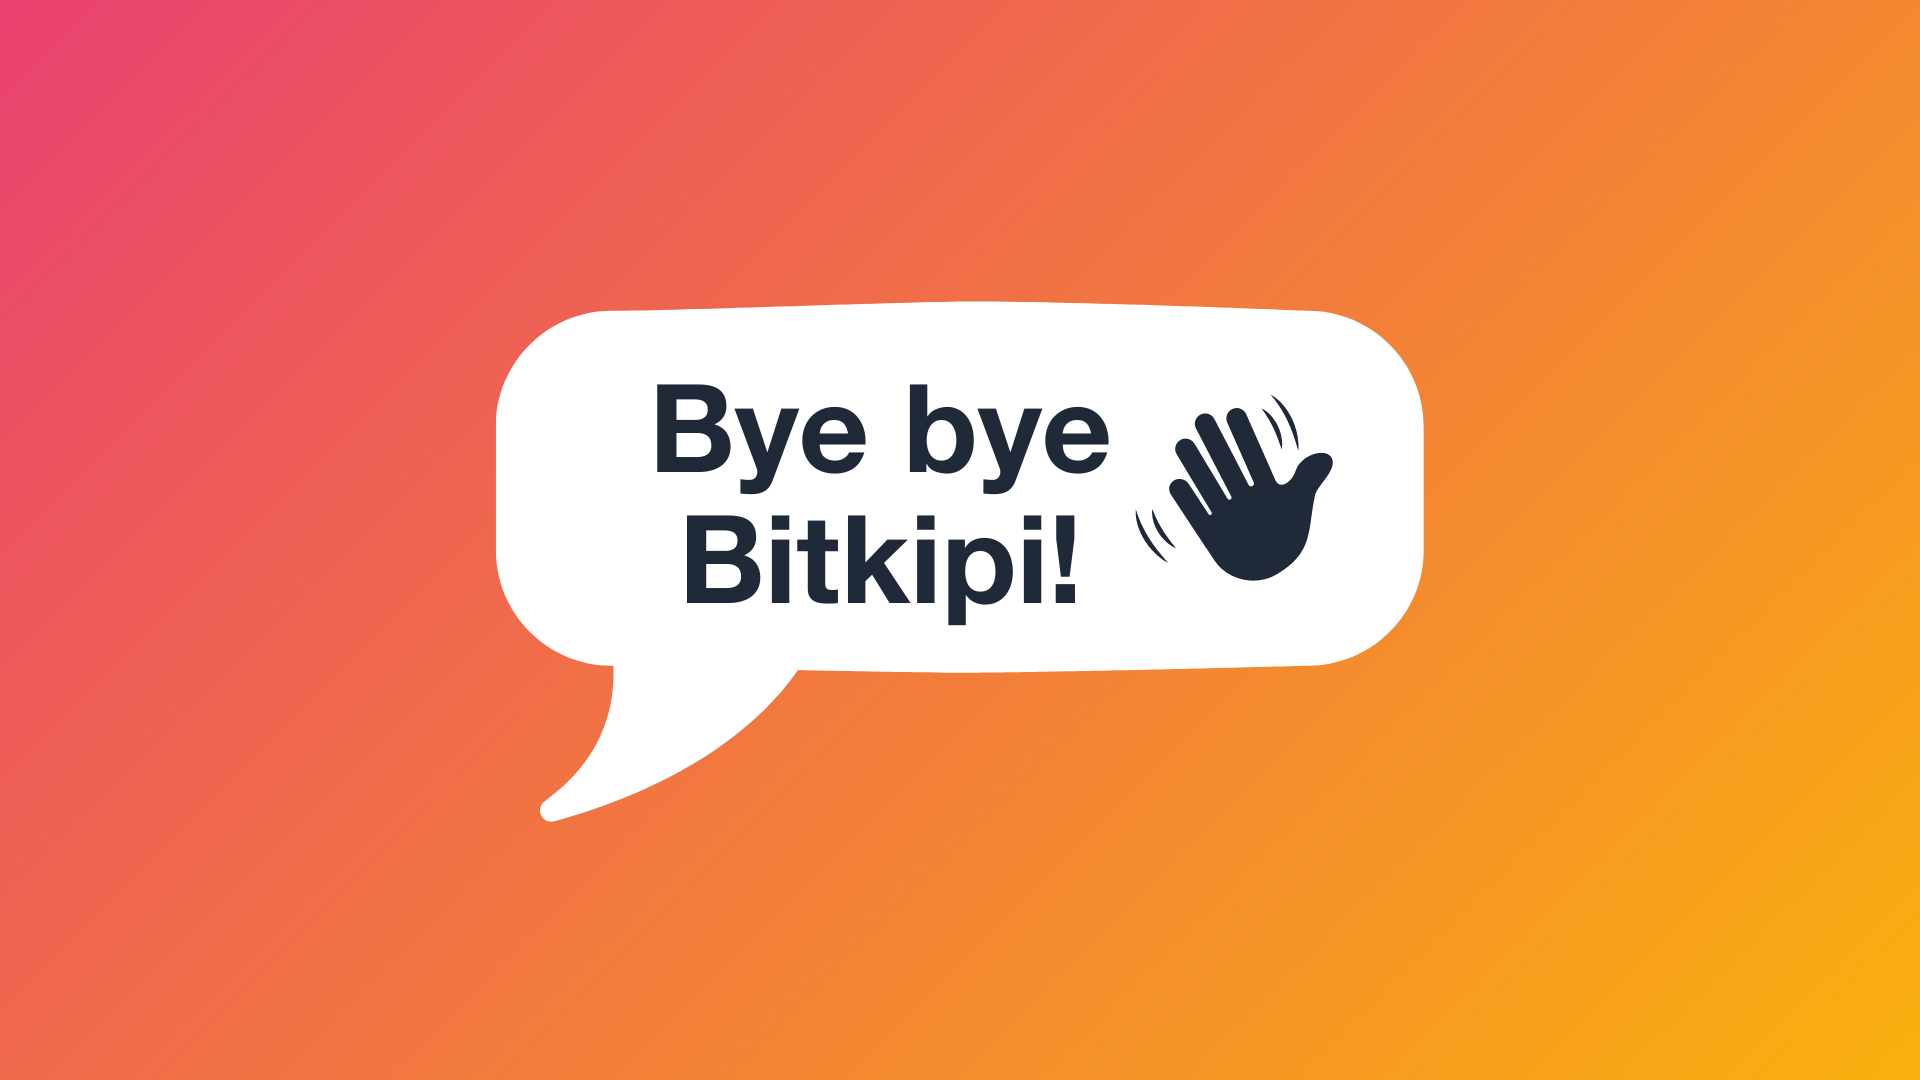 Pocket verabschiedet sich von der App und dem Brand Bitkipi